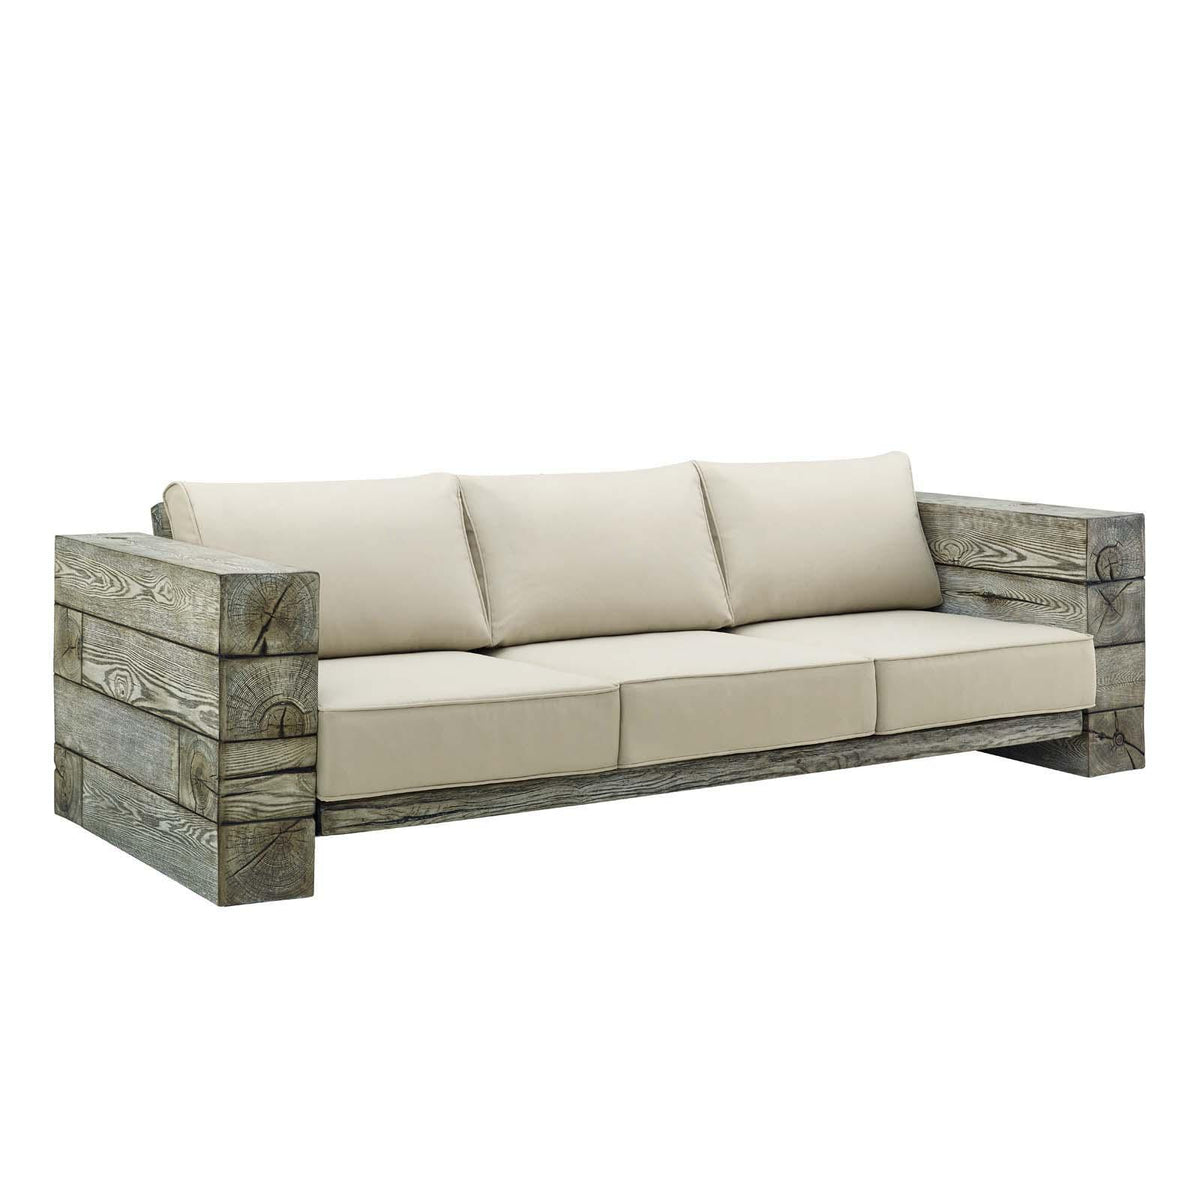 Modway Furniture Modern Manteo Rustic Coastal Outdoor Patio Sunbrella® 5 Piece Set - EEI-3651